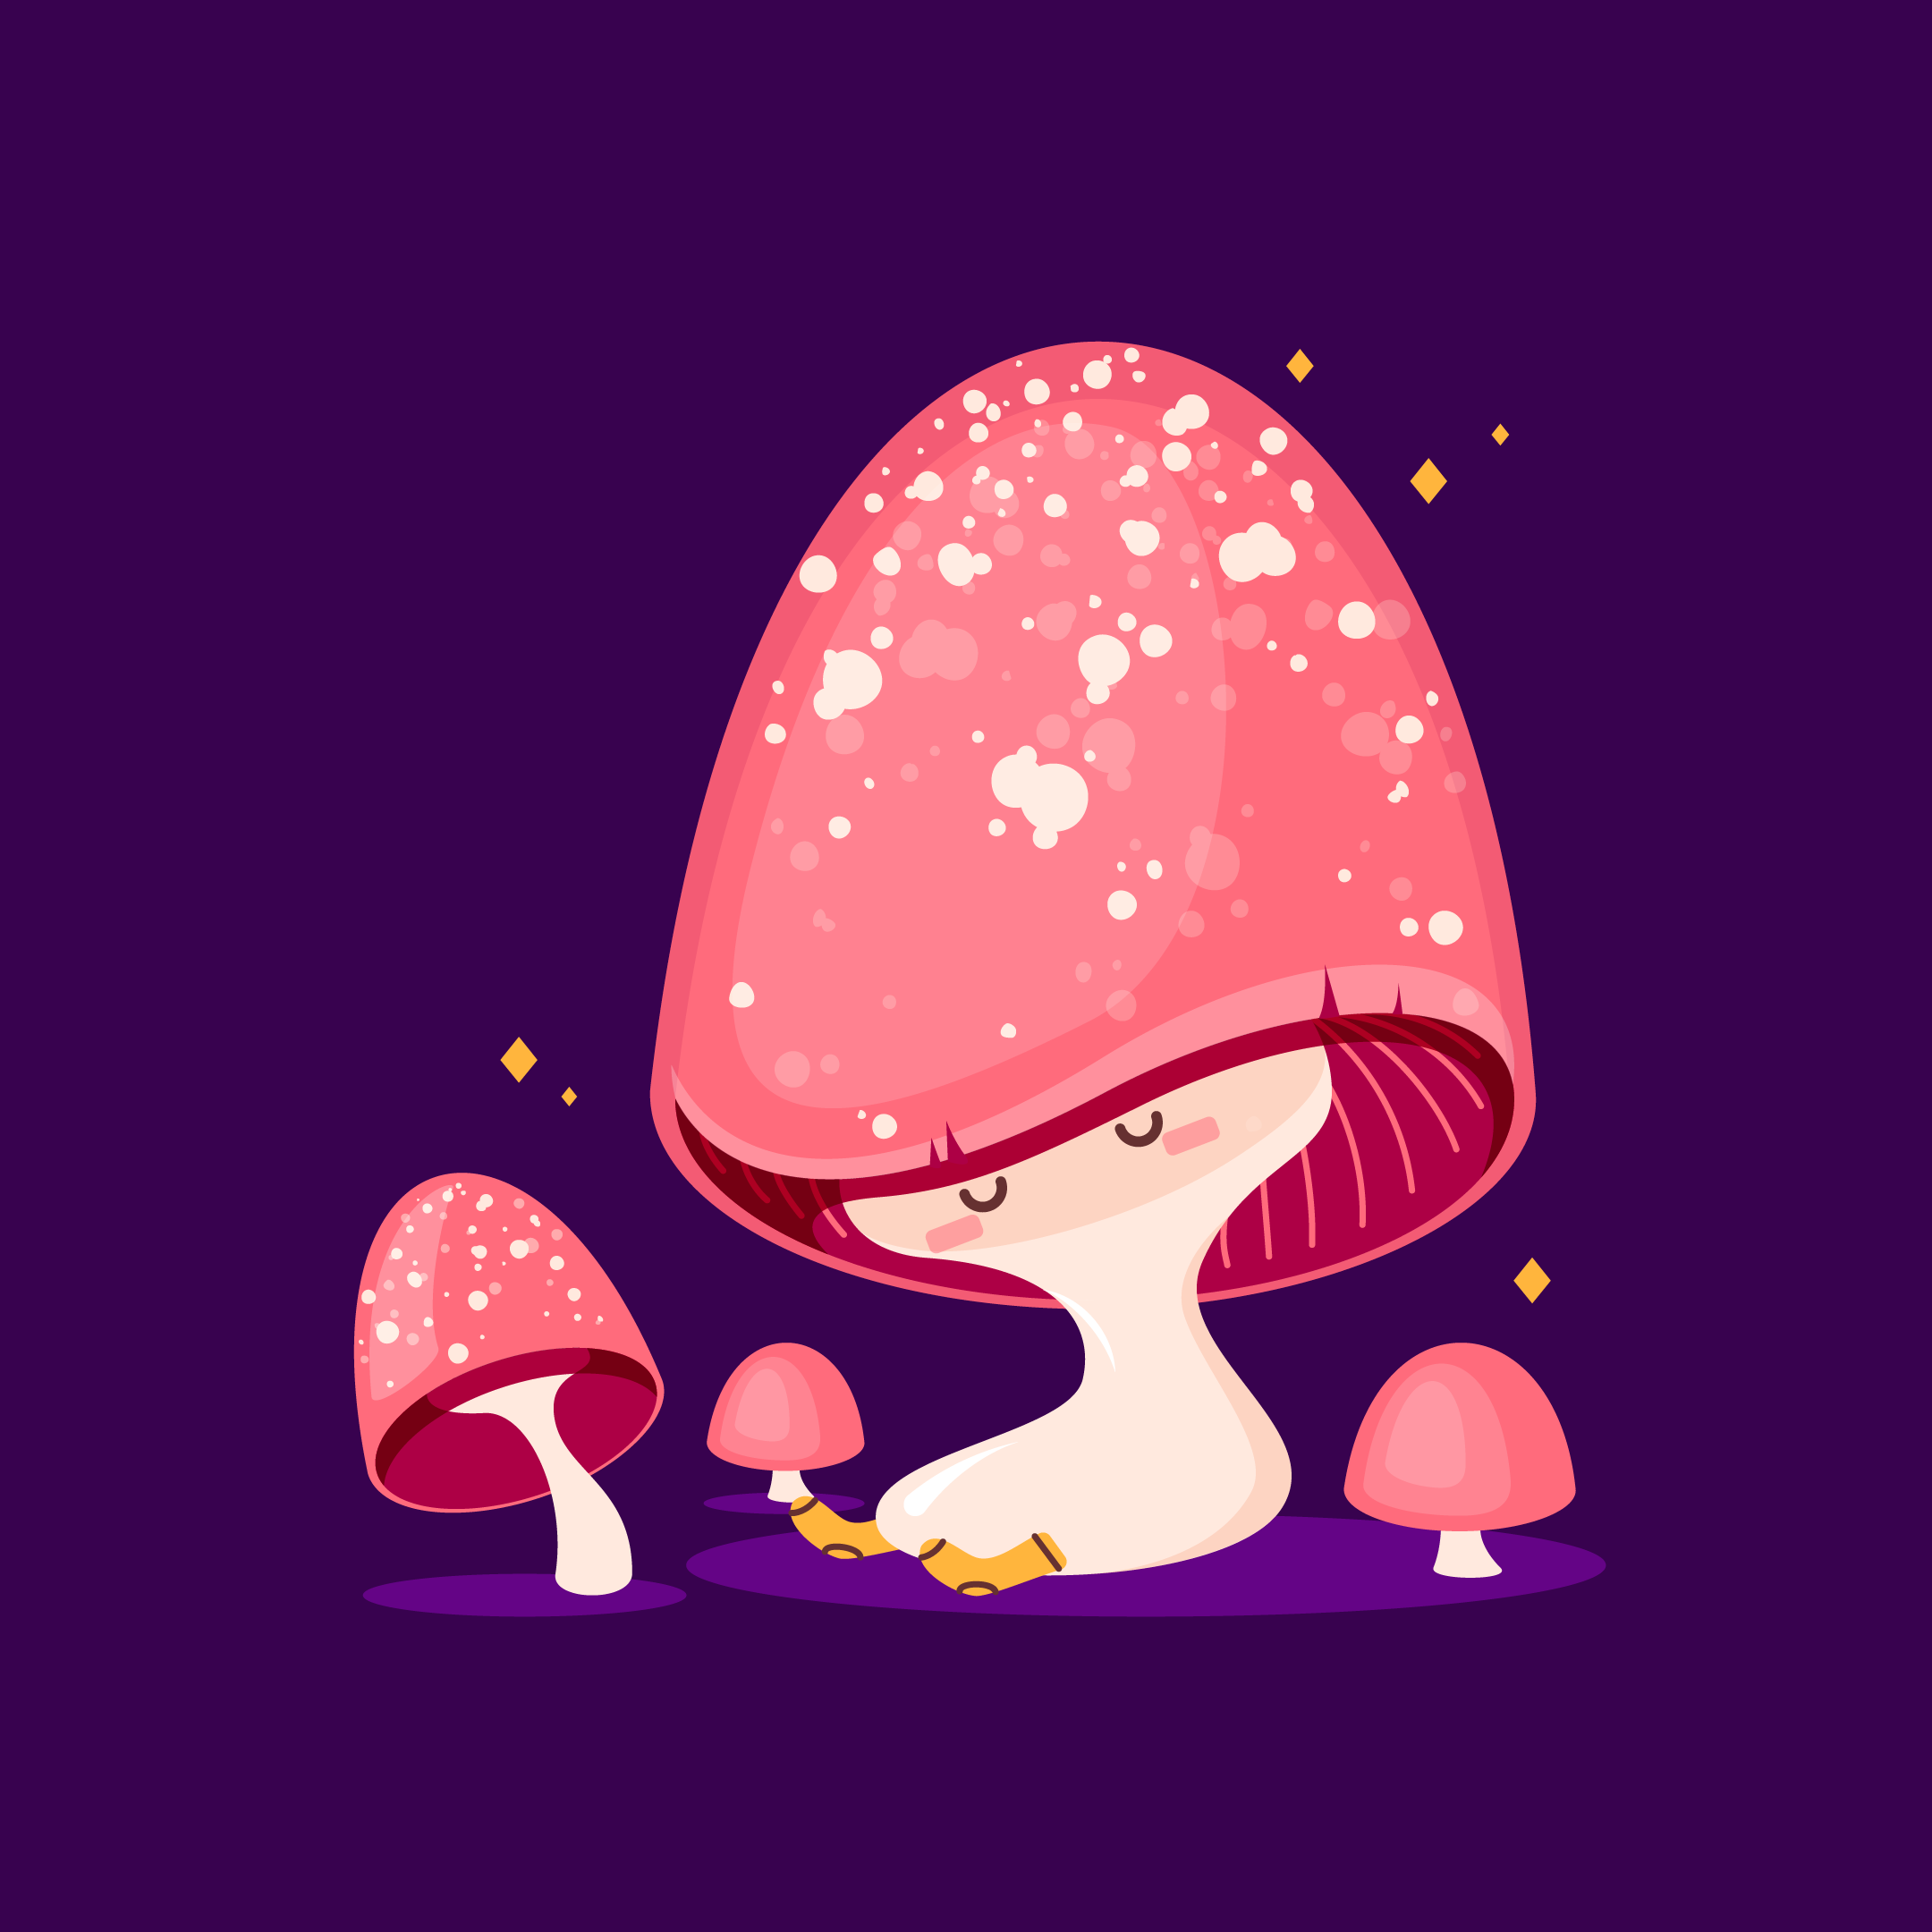 Illustration of a sleepy pink spotted mushroom wearing socks.